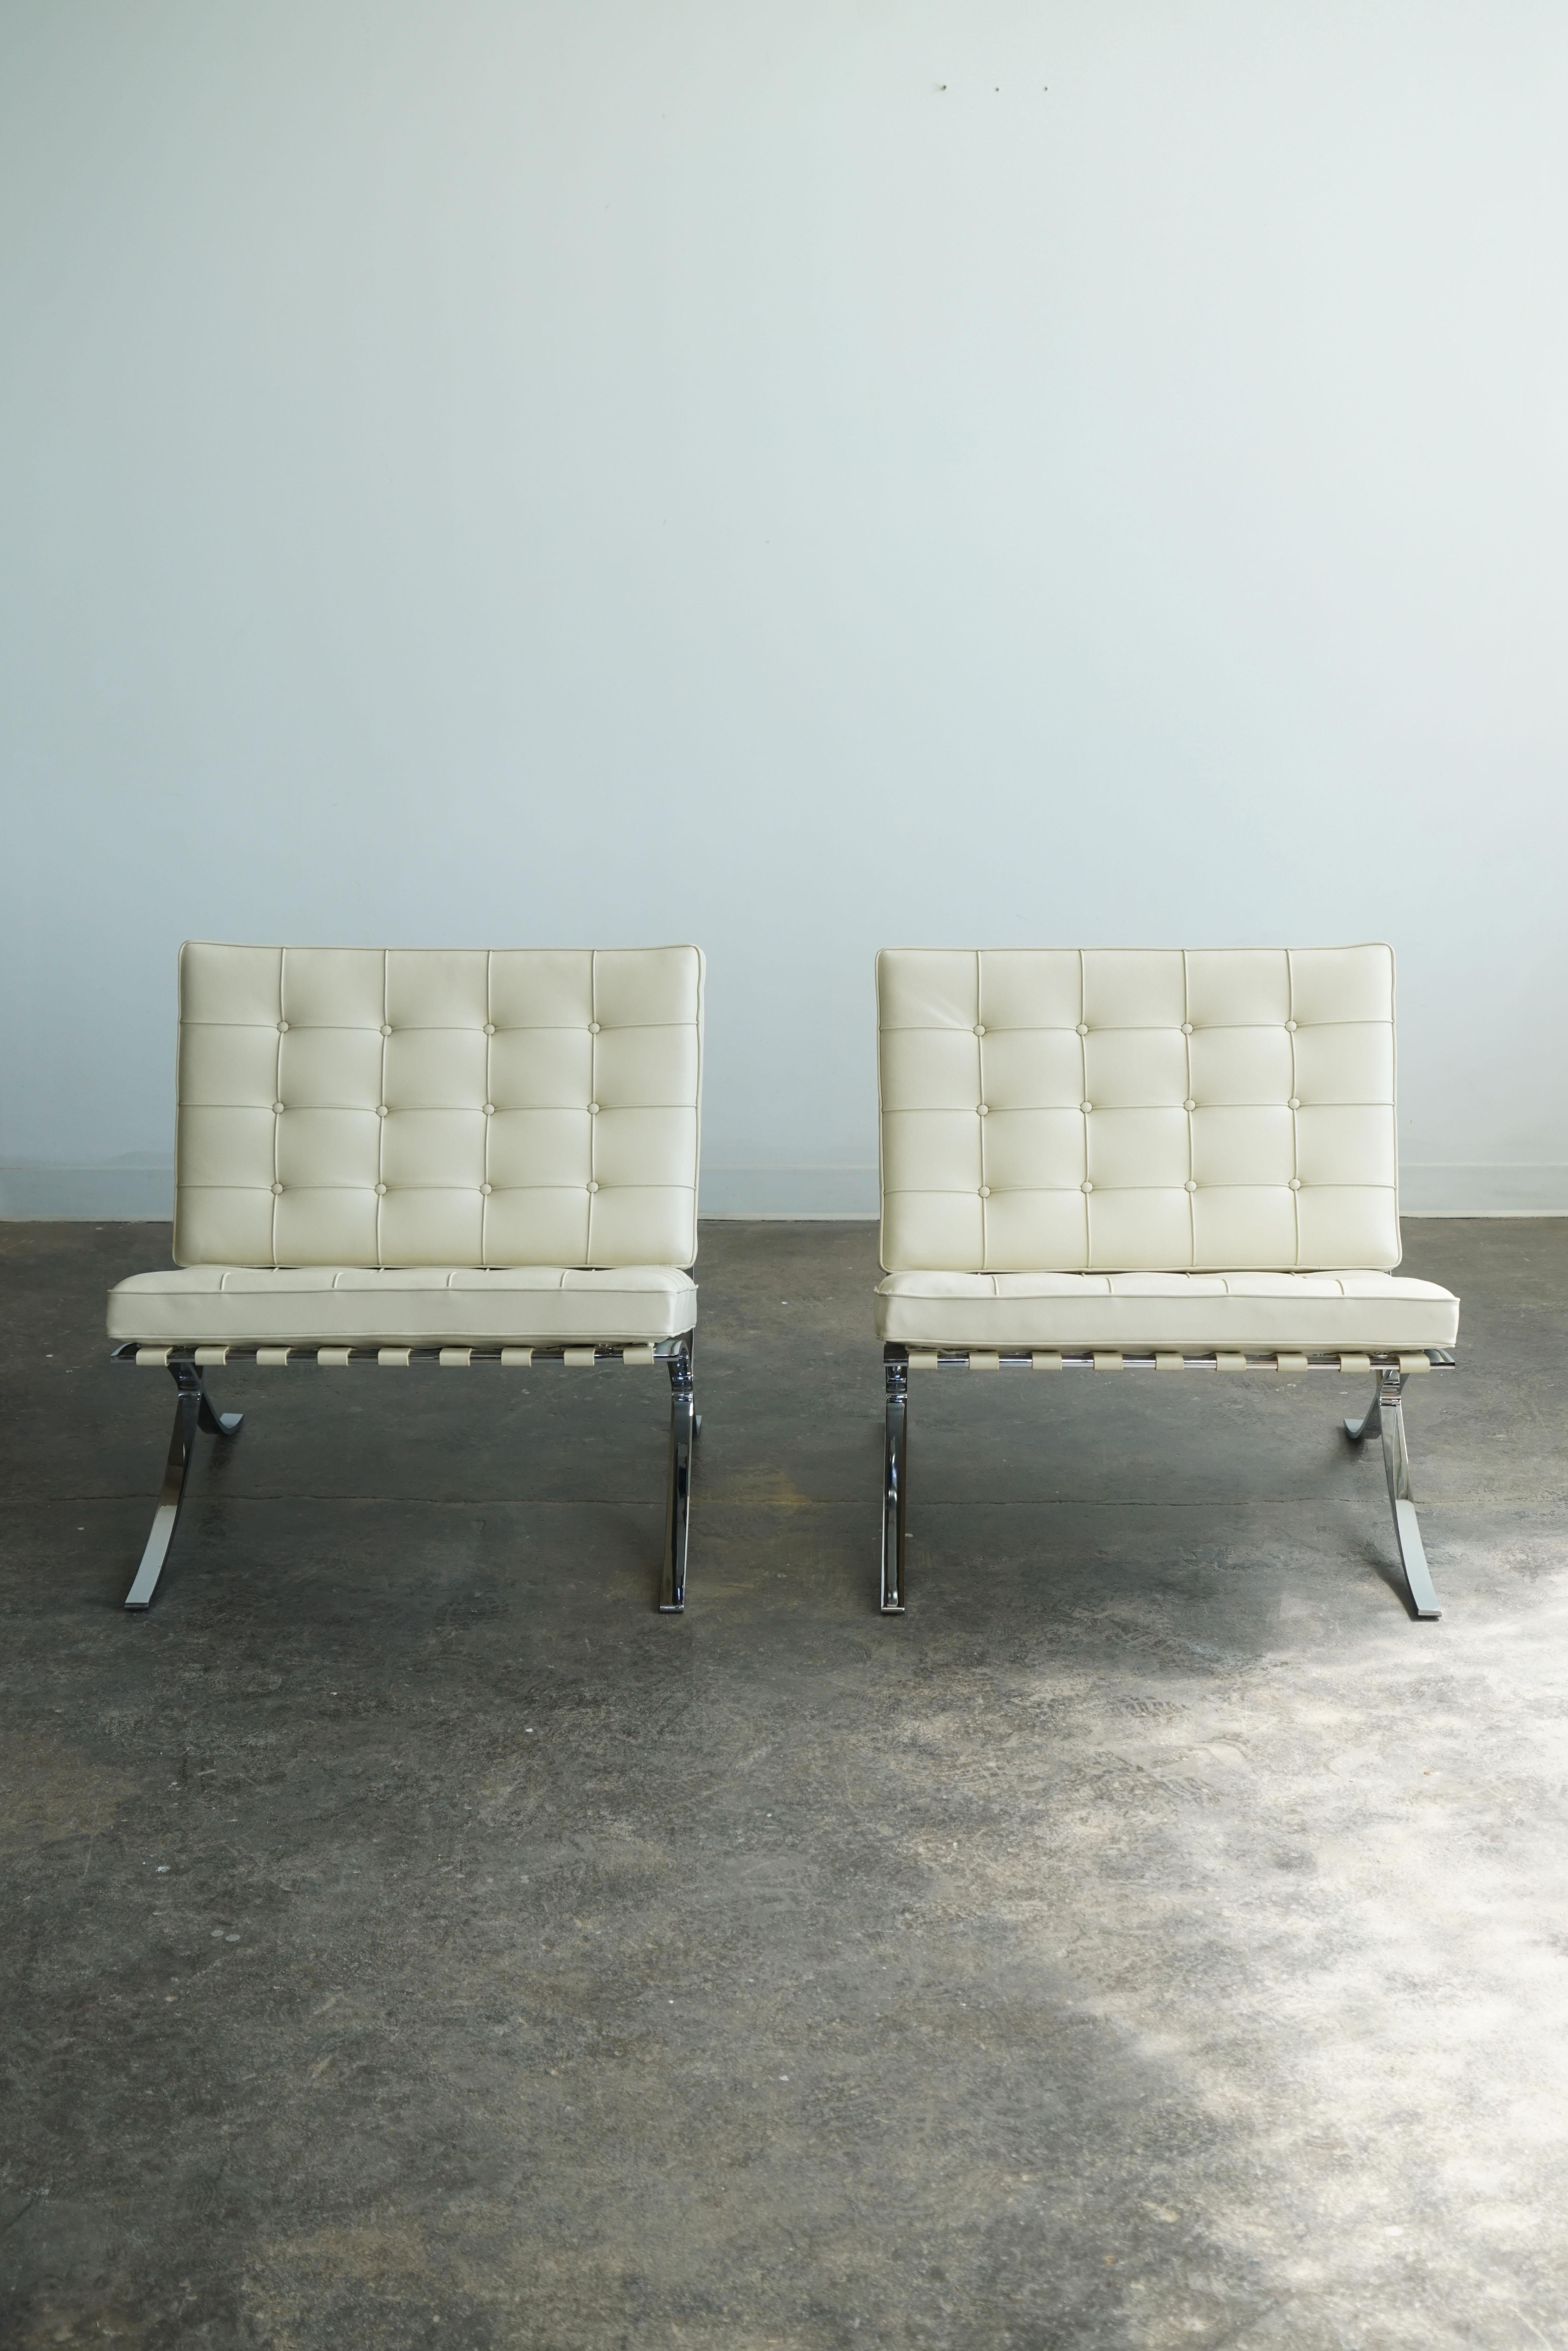 Knoll Barcelona Stühle, 2er Set.
Entworfen von Mies van der Rohe, ursprünglich im Jahr 1929.  
Volo 